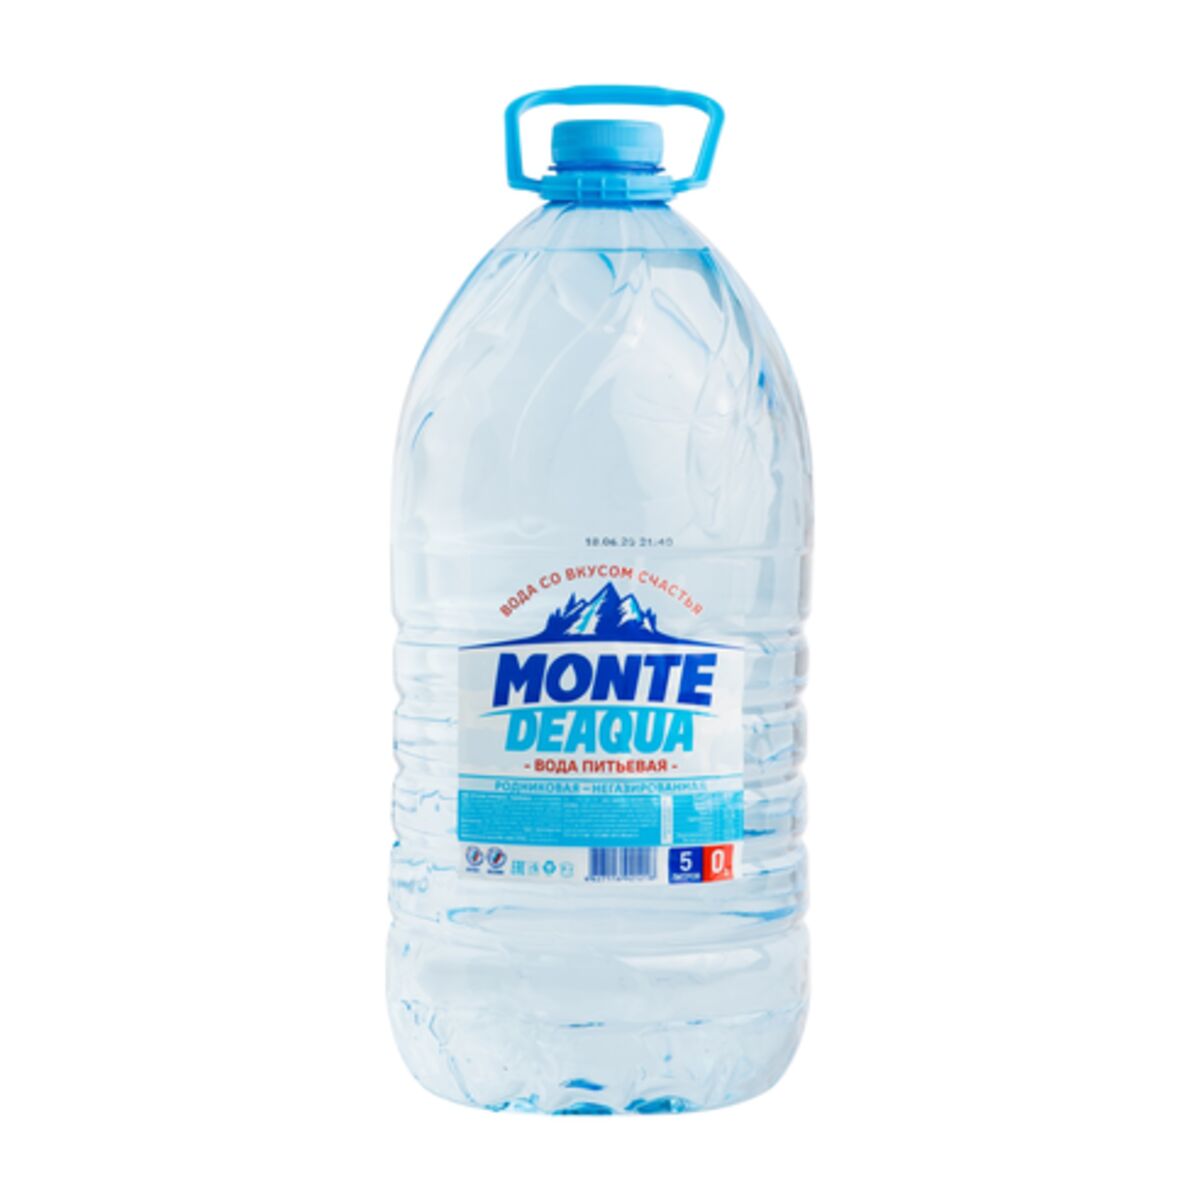 Вода питьевая негазированная 5 л. Монте ДЕАКВА 5л. Monte DEAQUA вода 5. Вода питьевая "Monte DEAQUA/Монте ДЕАКВА" негазированная 7л ООО "Аква групп". Вода питьевая Monte DEAQUA 7л 50.68.